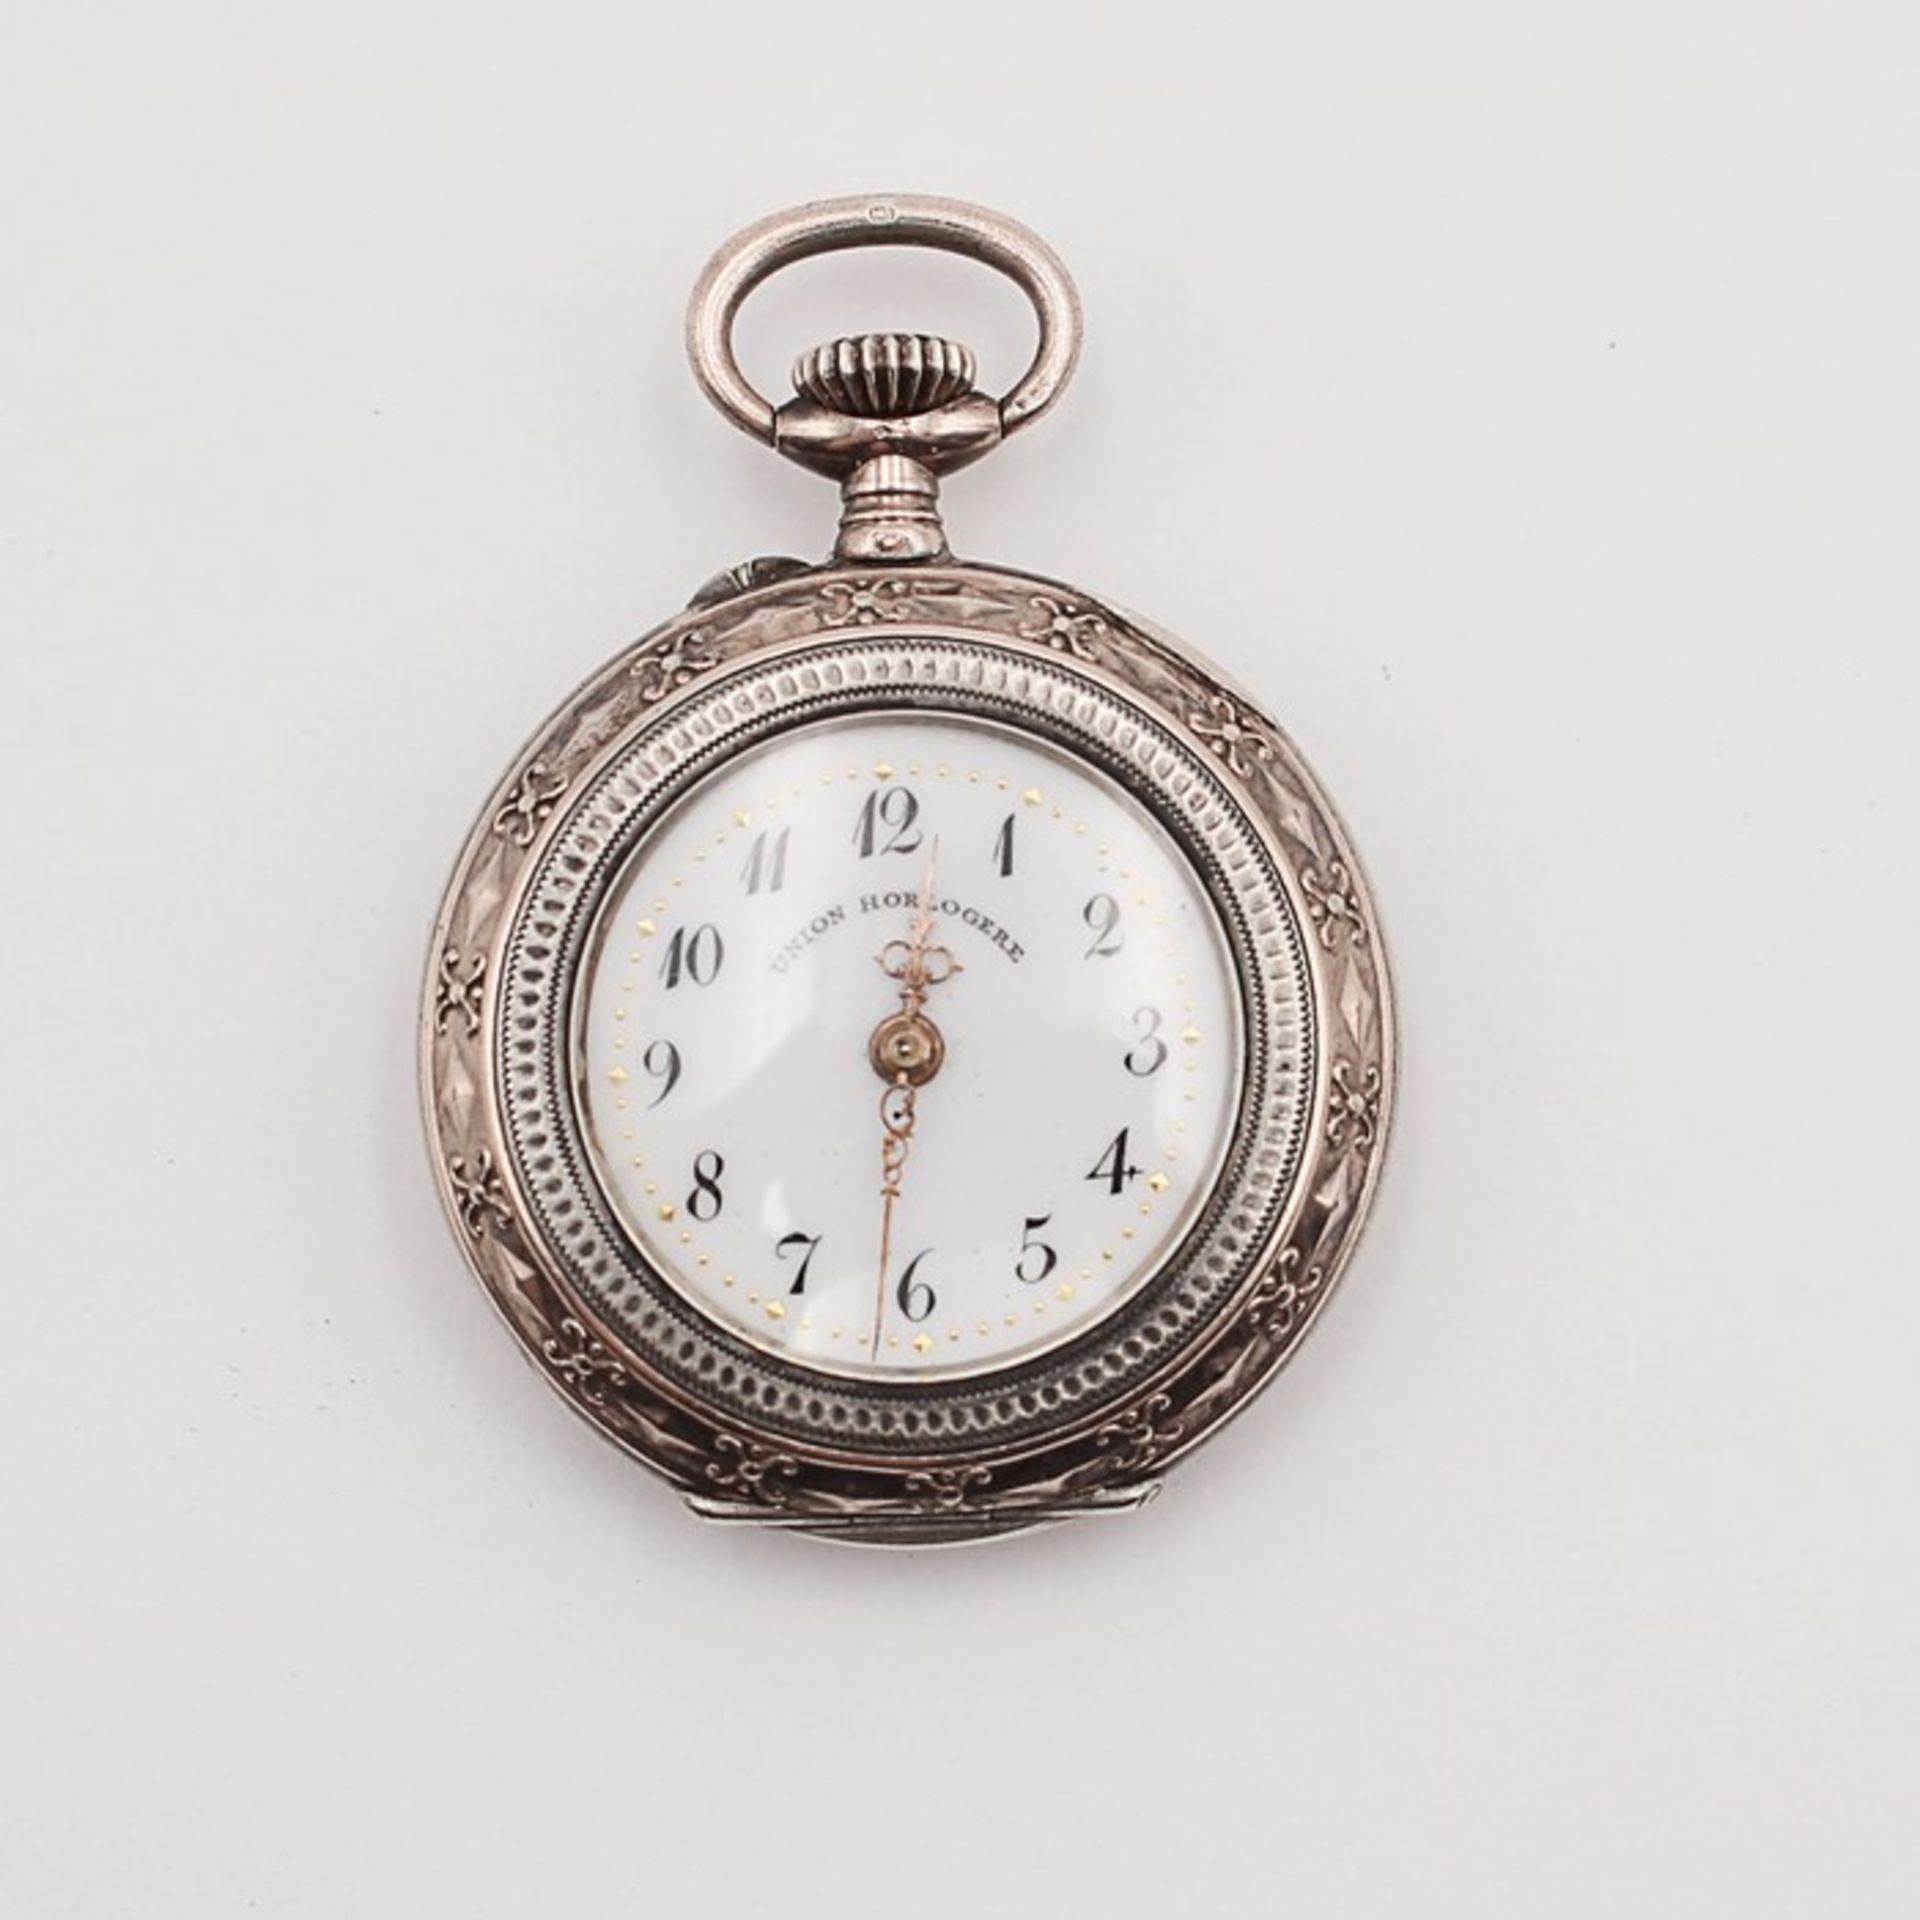 Damentaschenuhr - Union Horlogereum 1900, Si 800, Lepine-Gehäuse, weißes Emailzifferblatt, arab.